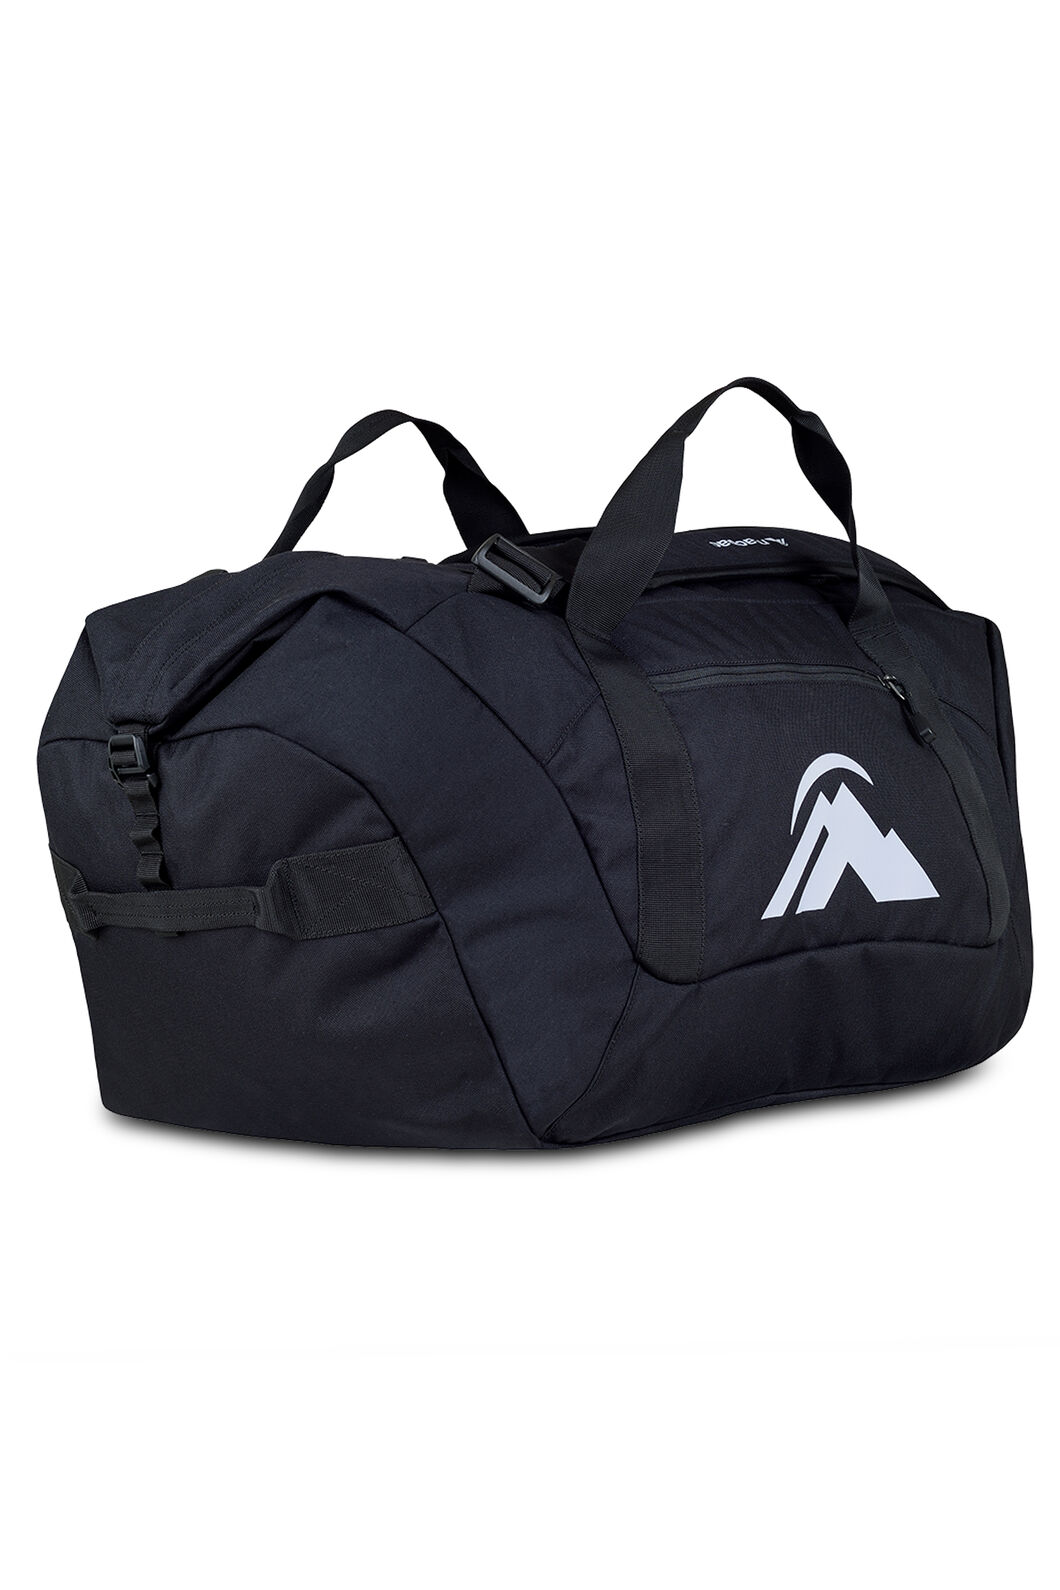 Macpac 80L Duffel Bag, Black/High RIse, hi-res